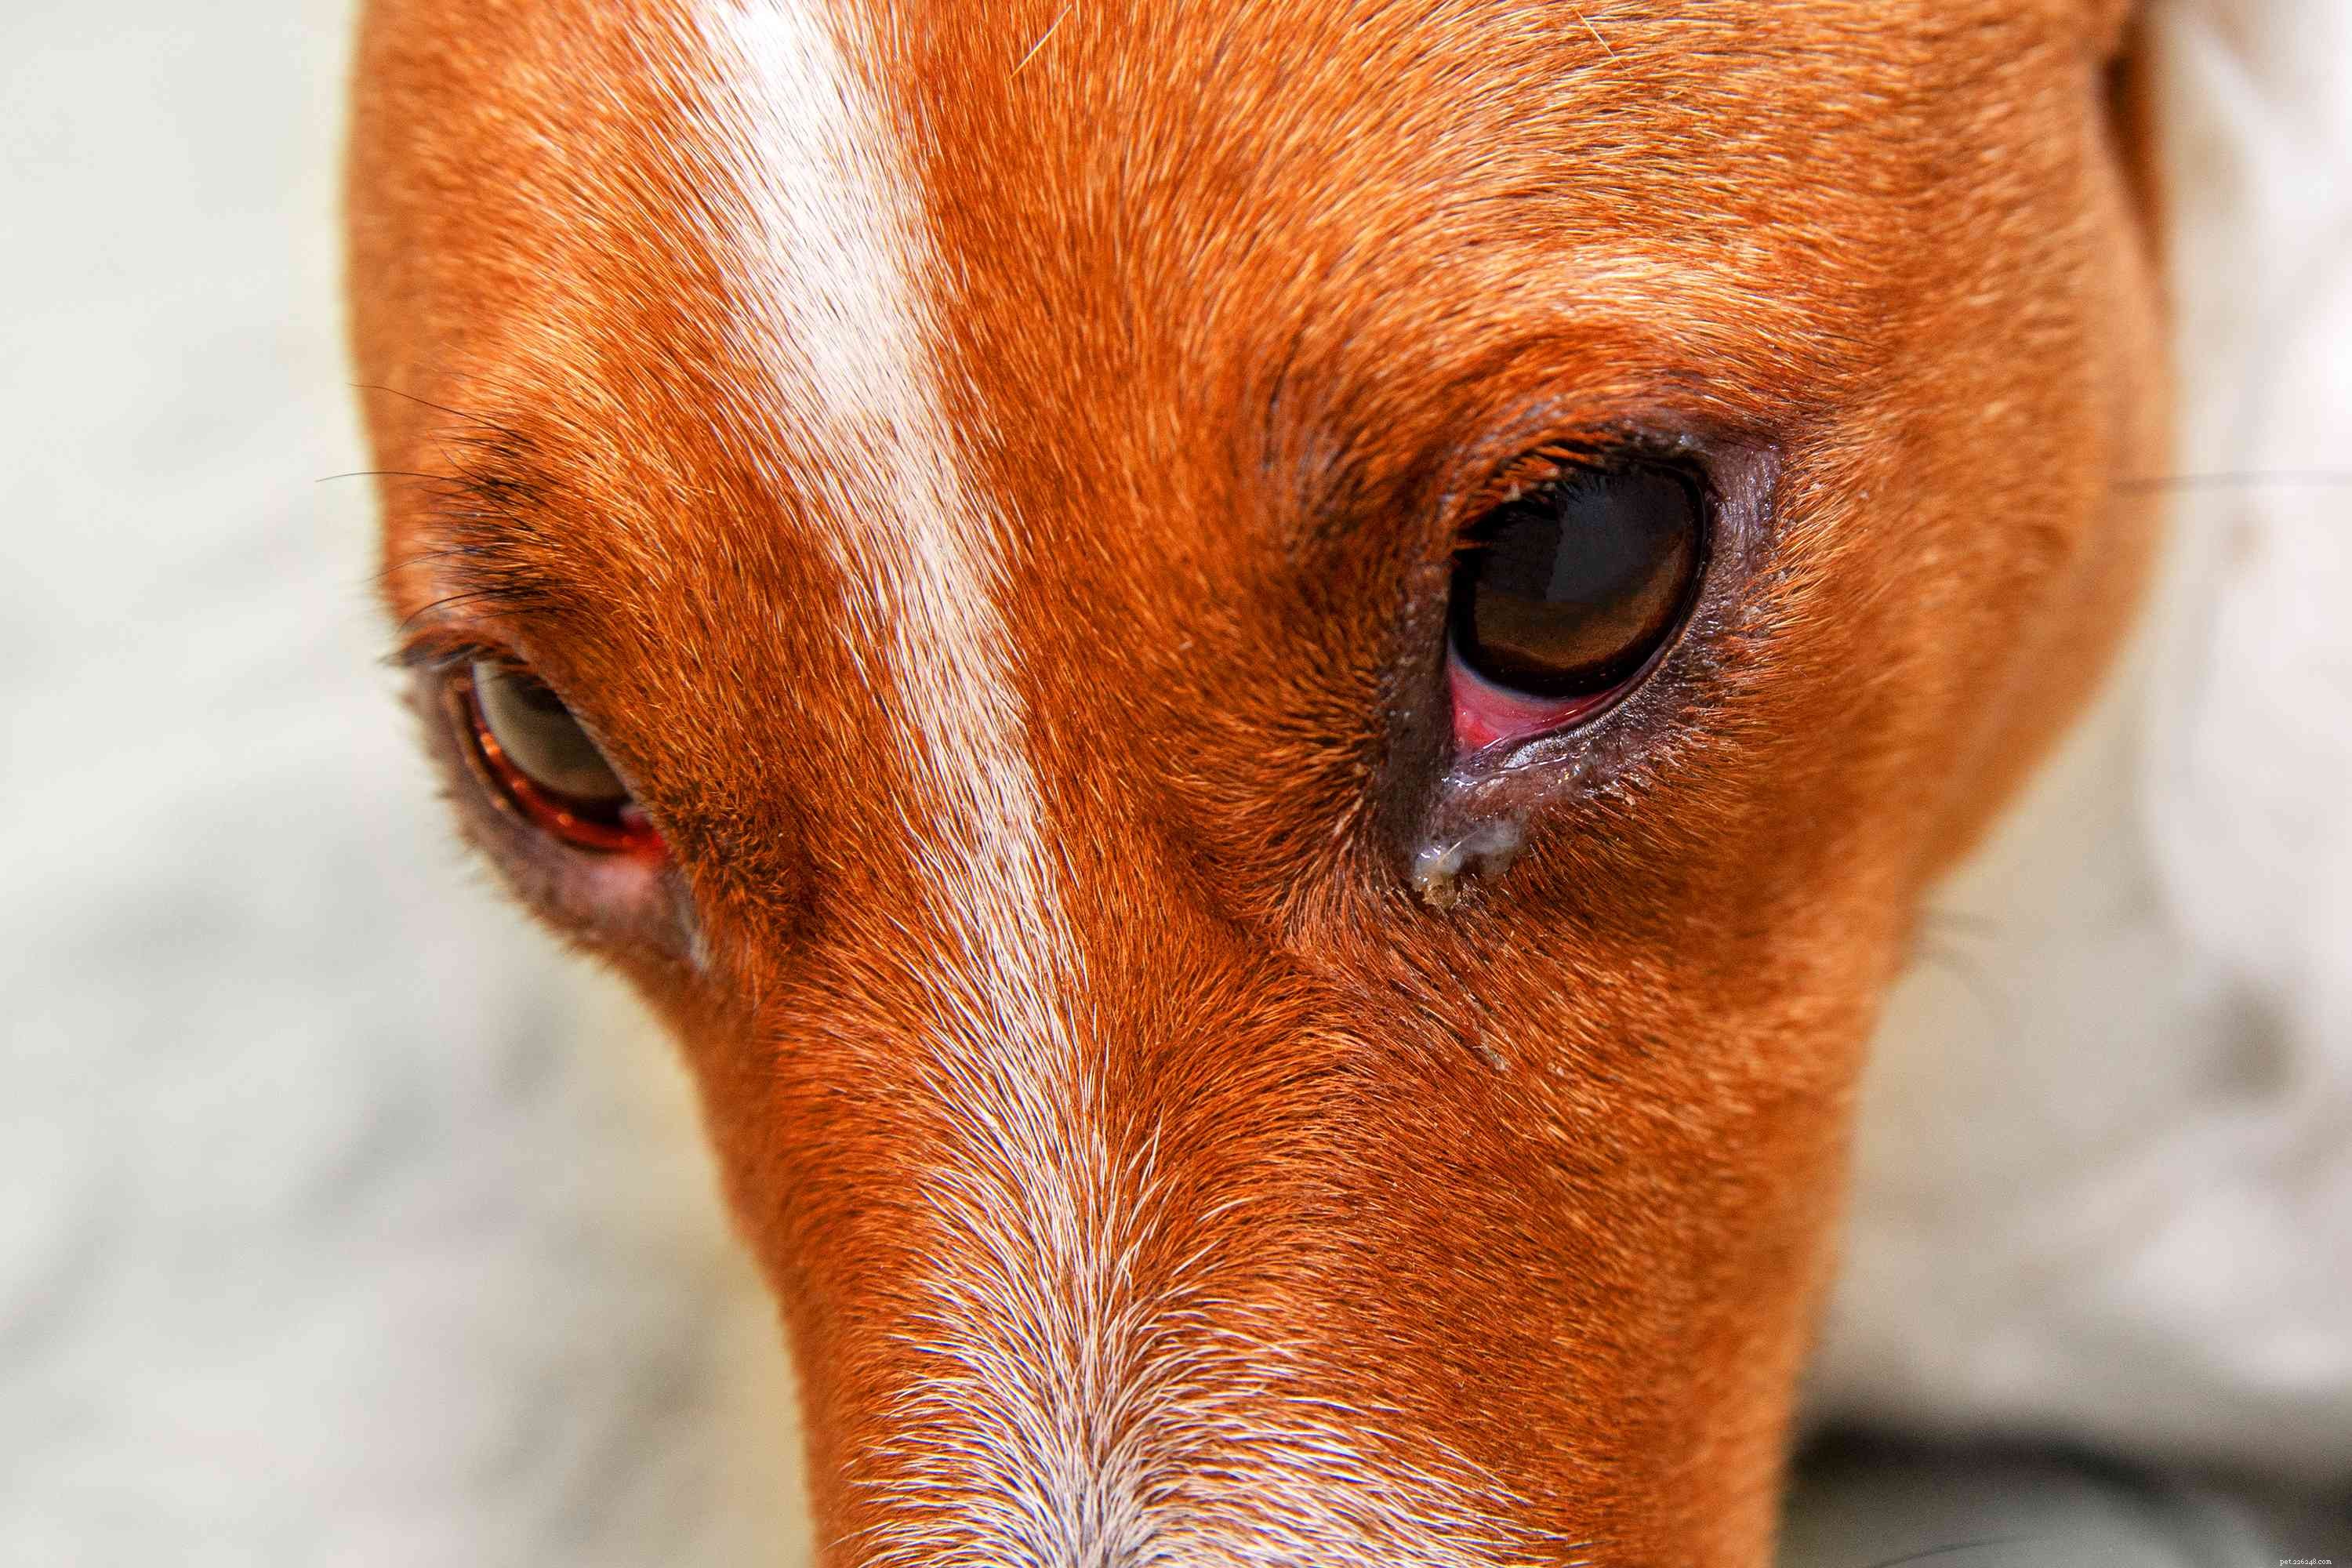 Eye Boogers in Dogs